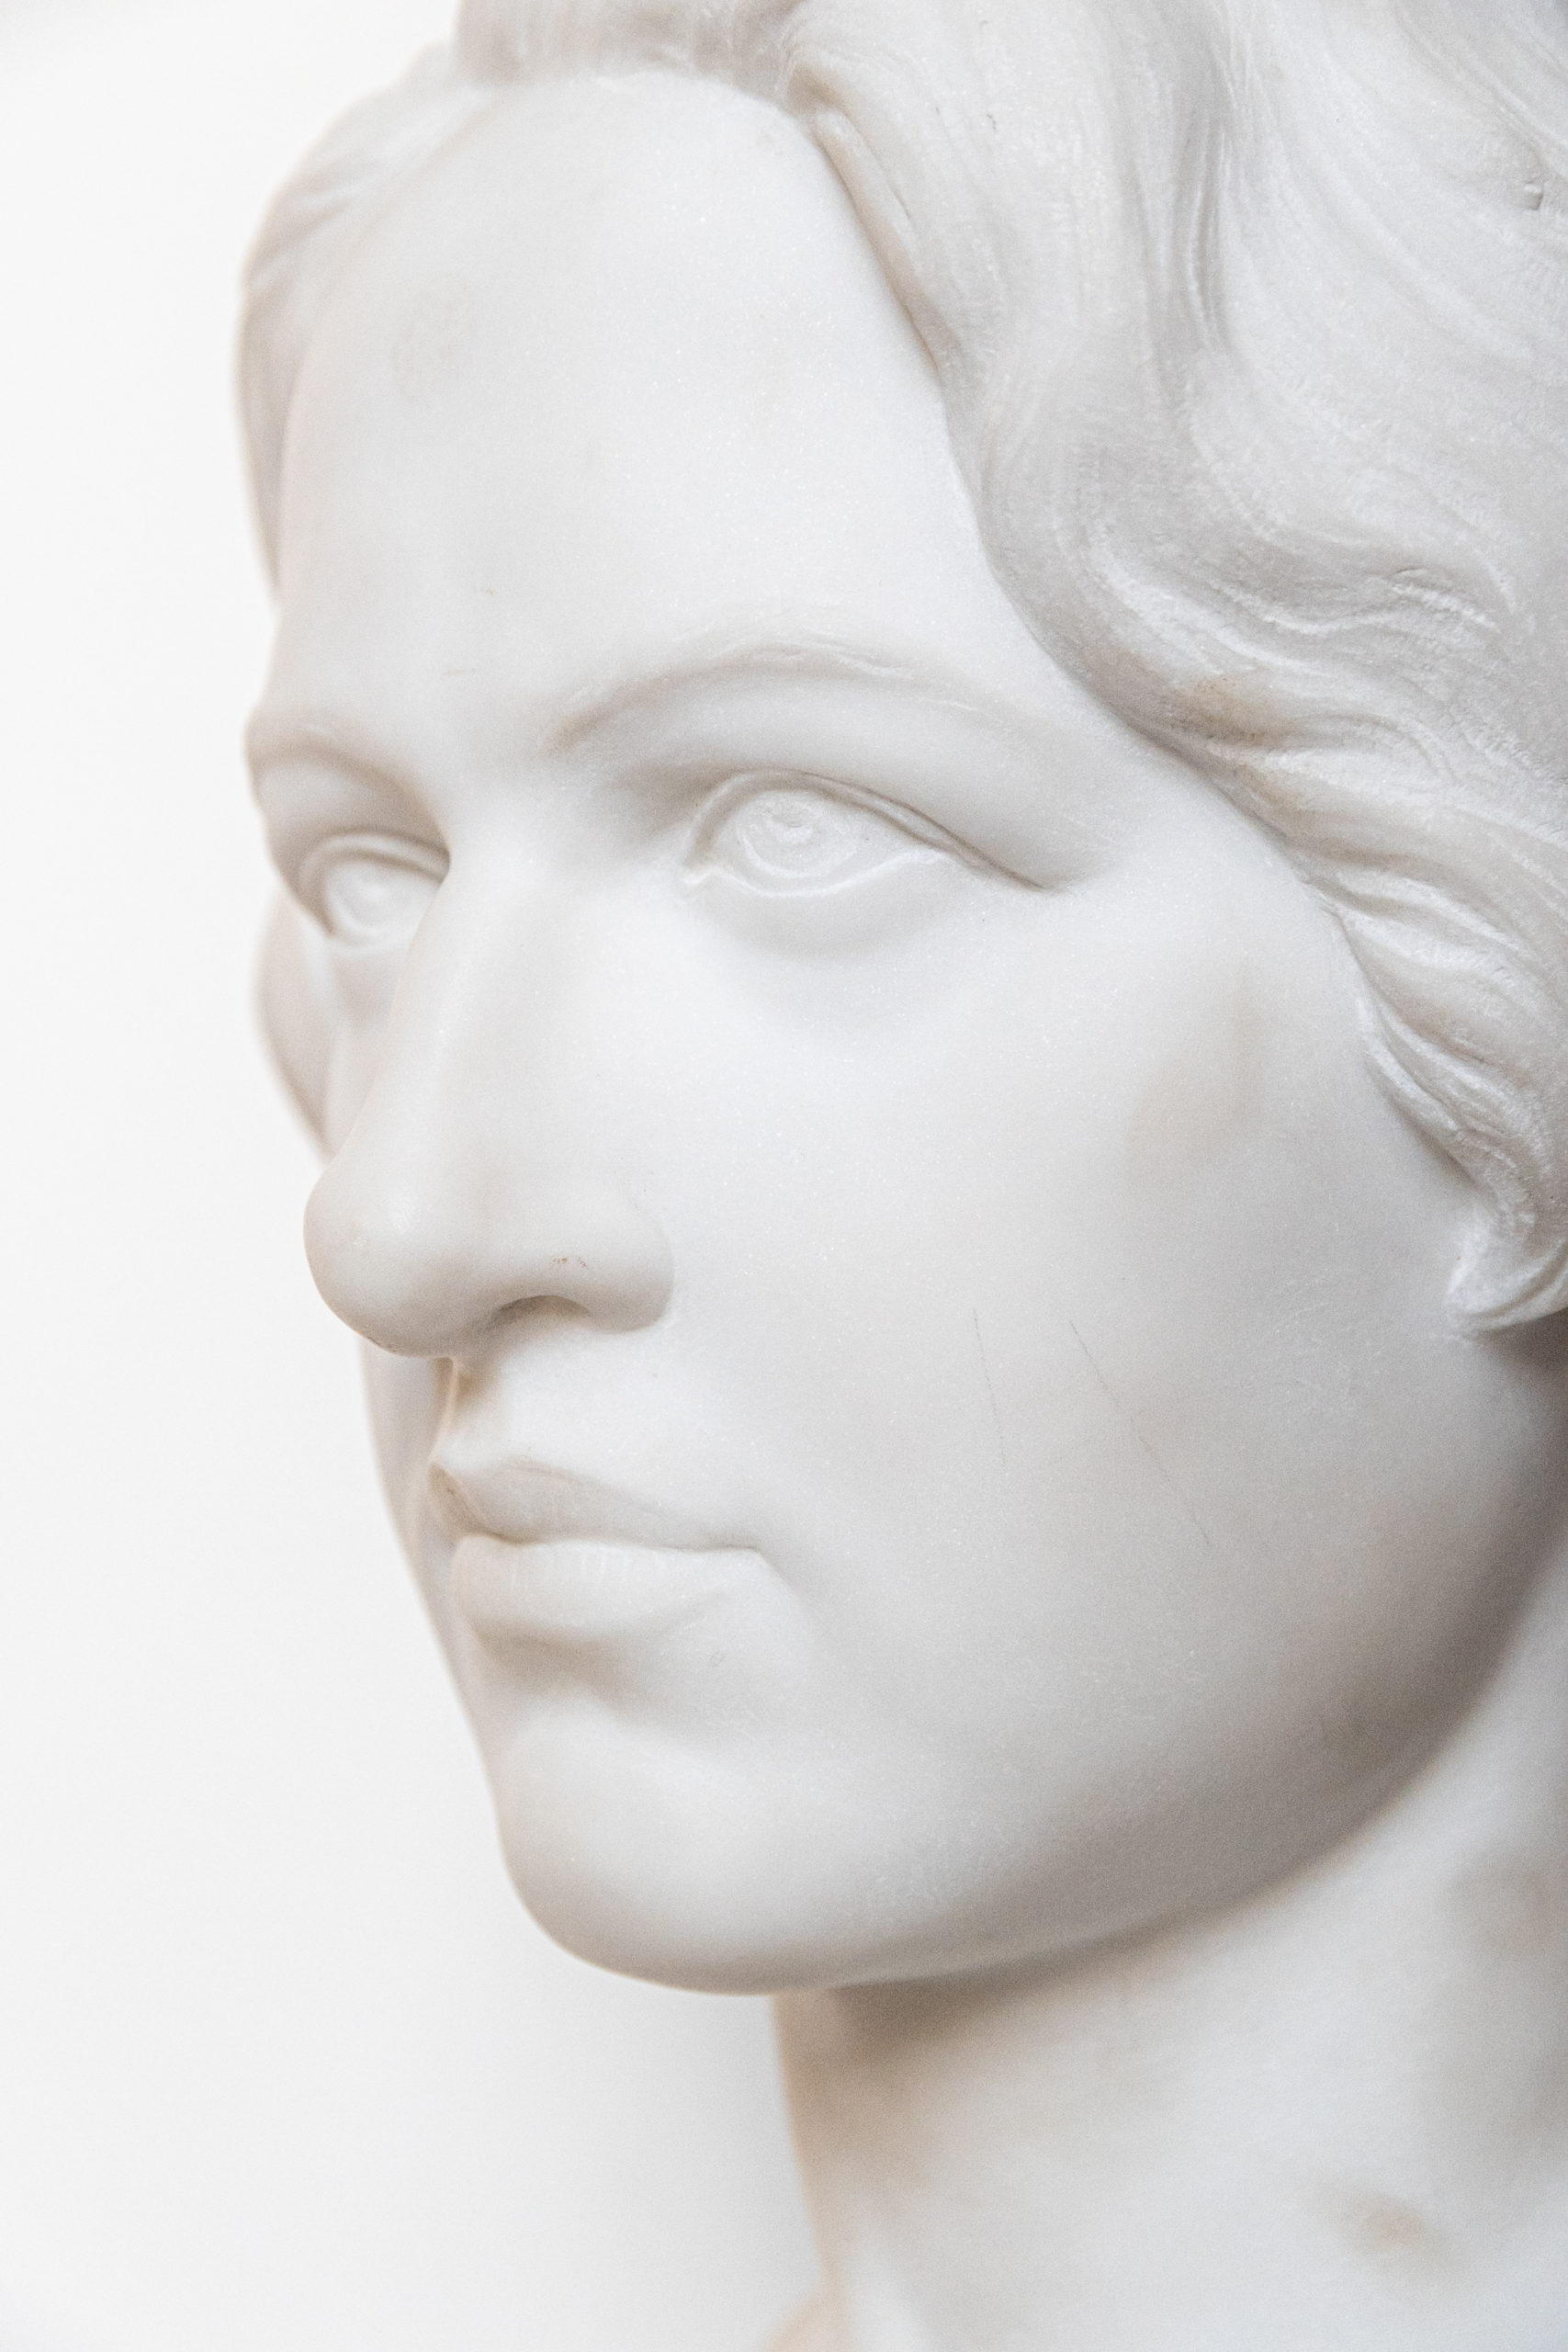 Buste-marbre-carrare-charles-ernest-diosi-sculpture-1920-Buste-femme-antiquaire-liège-aurore-morisse-affaire-conclue5